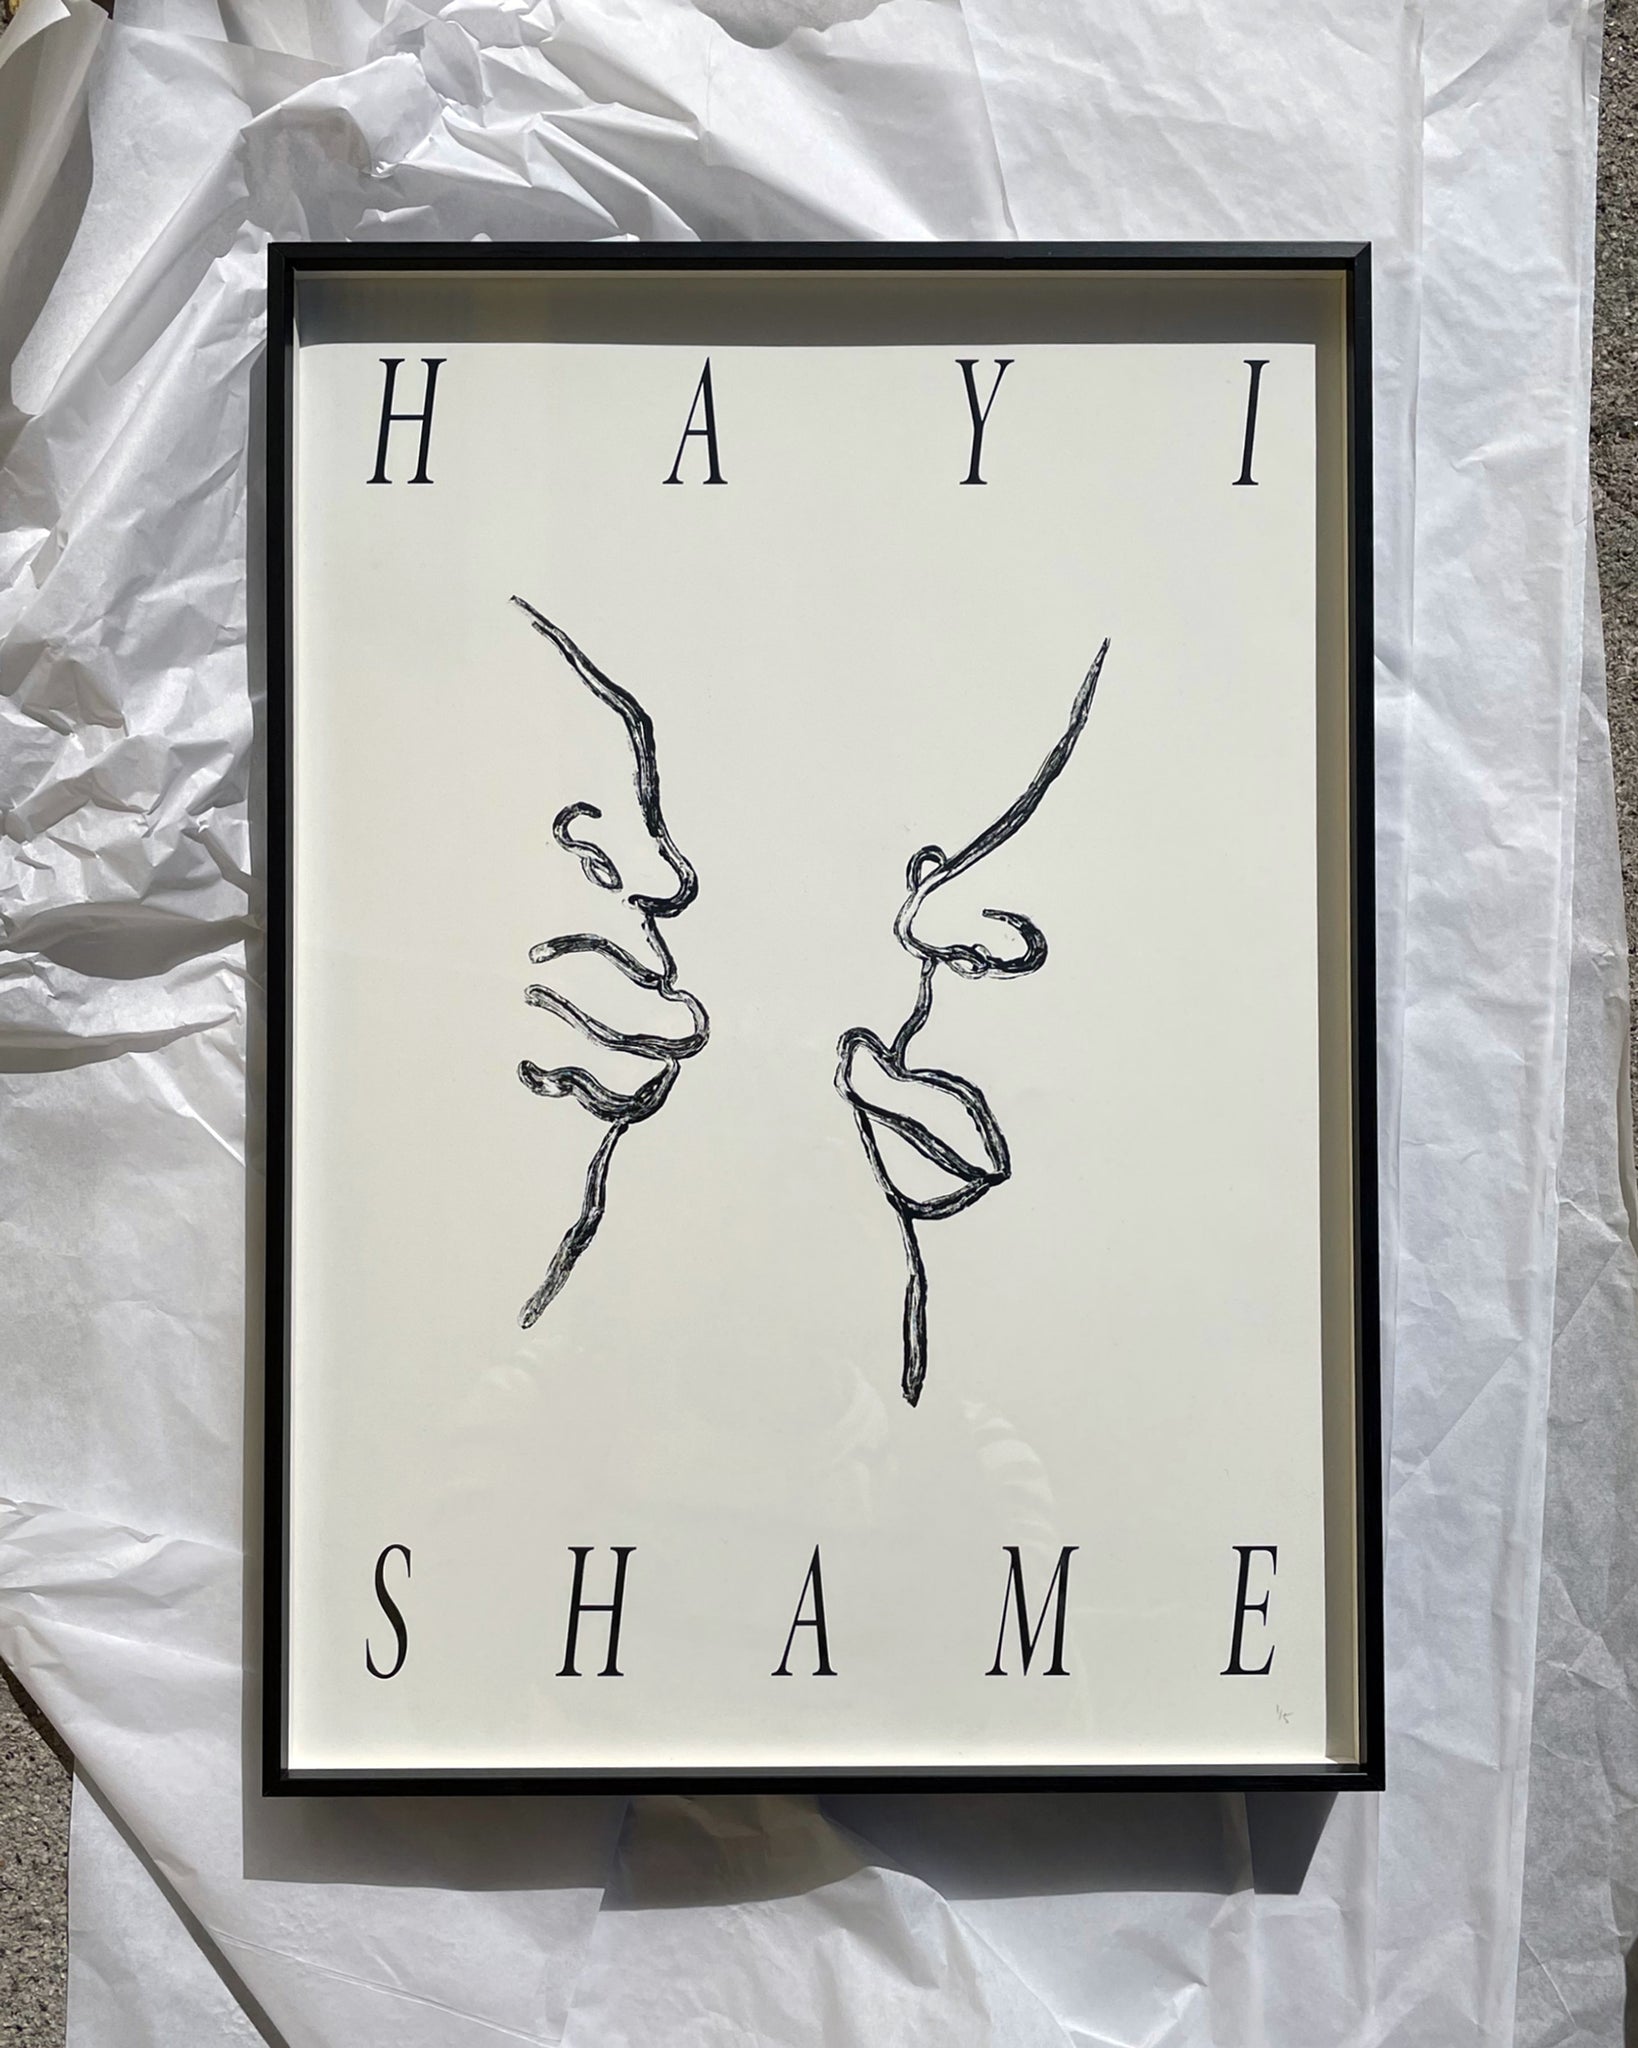 Hayi shame